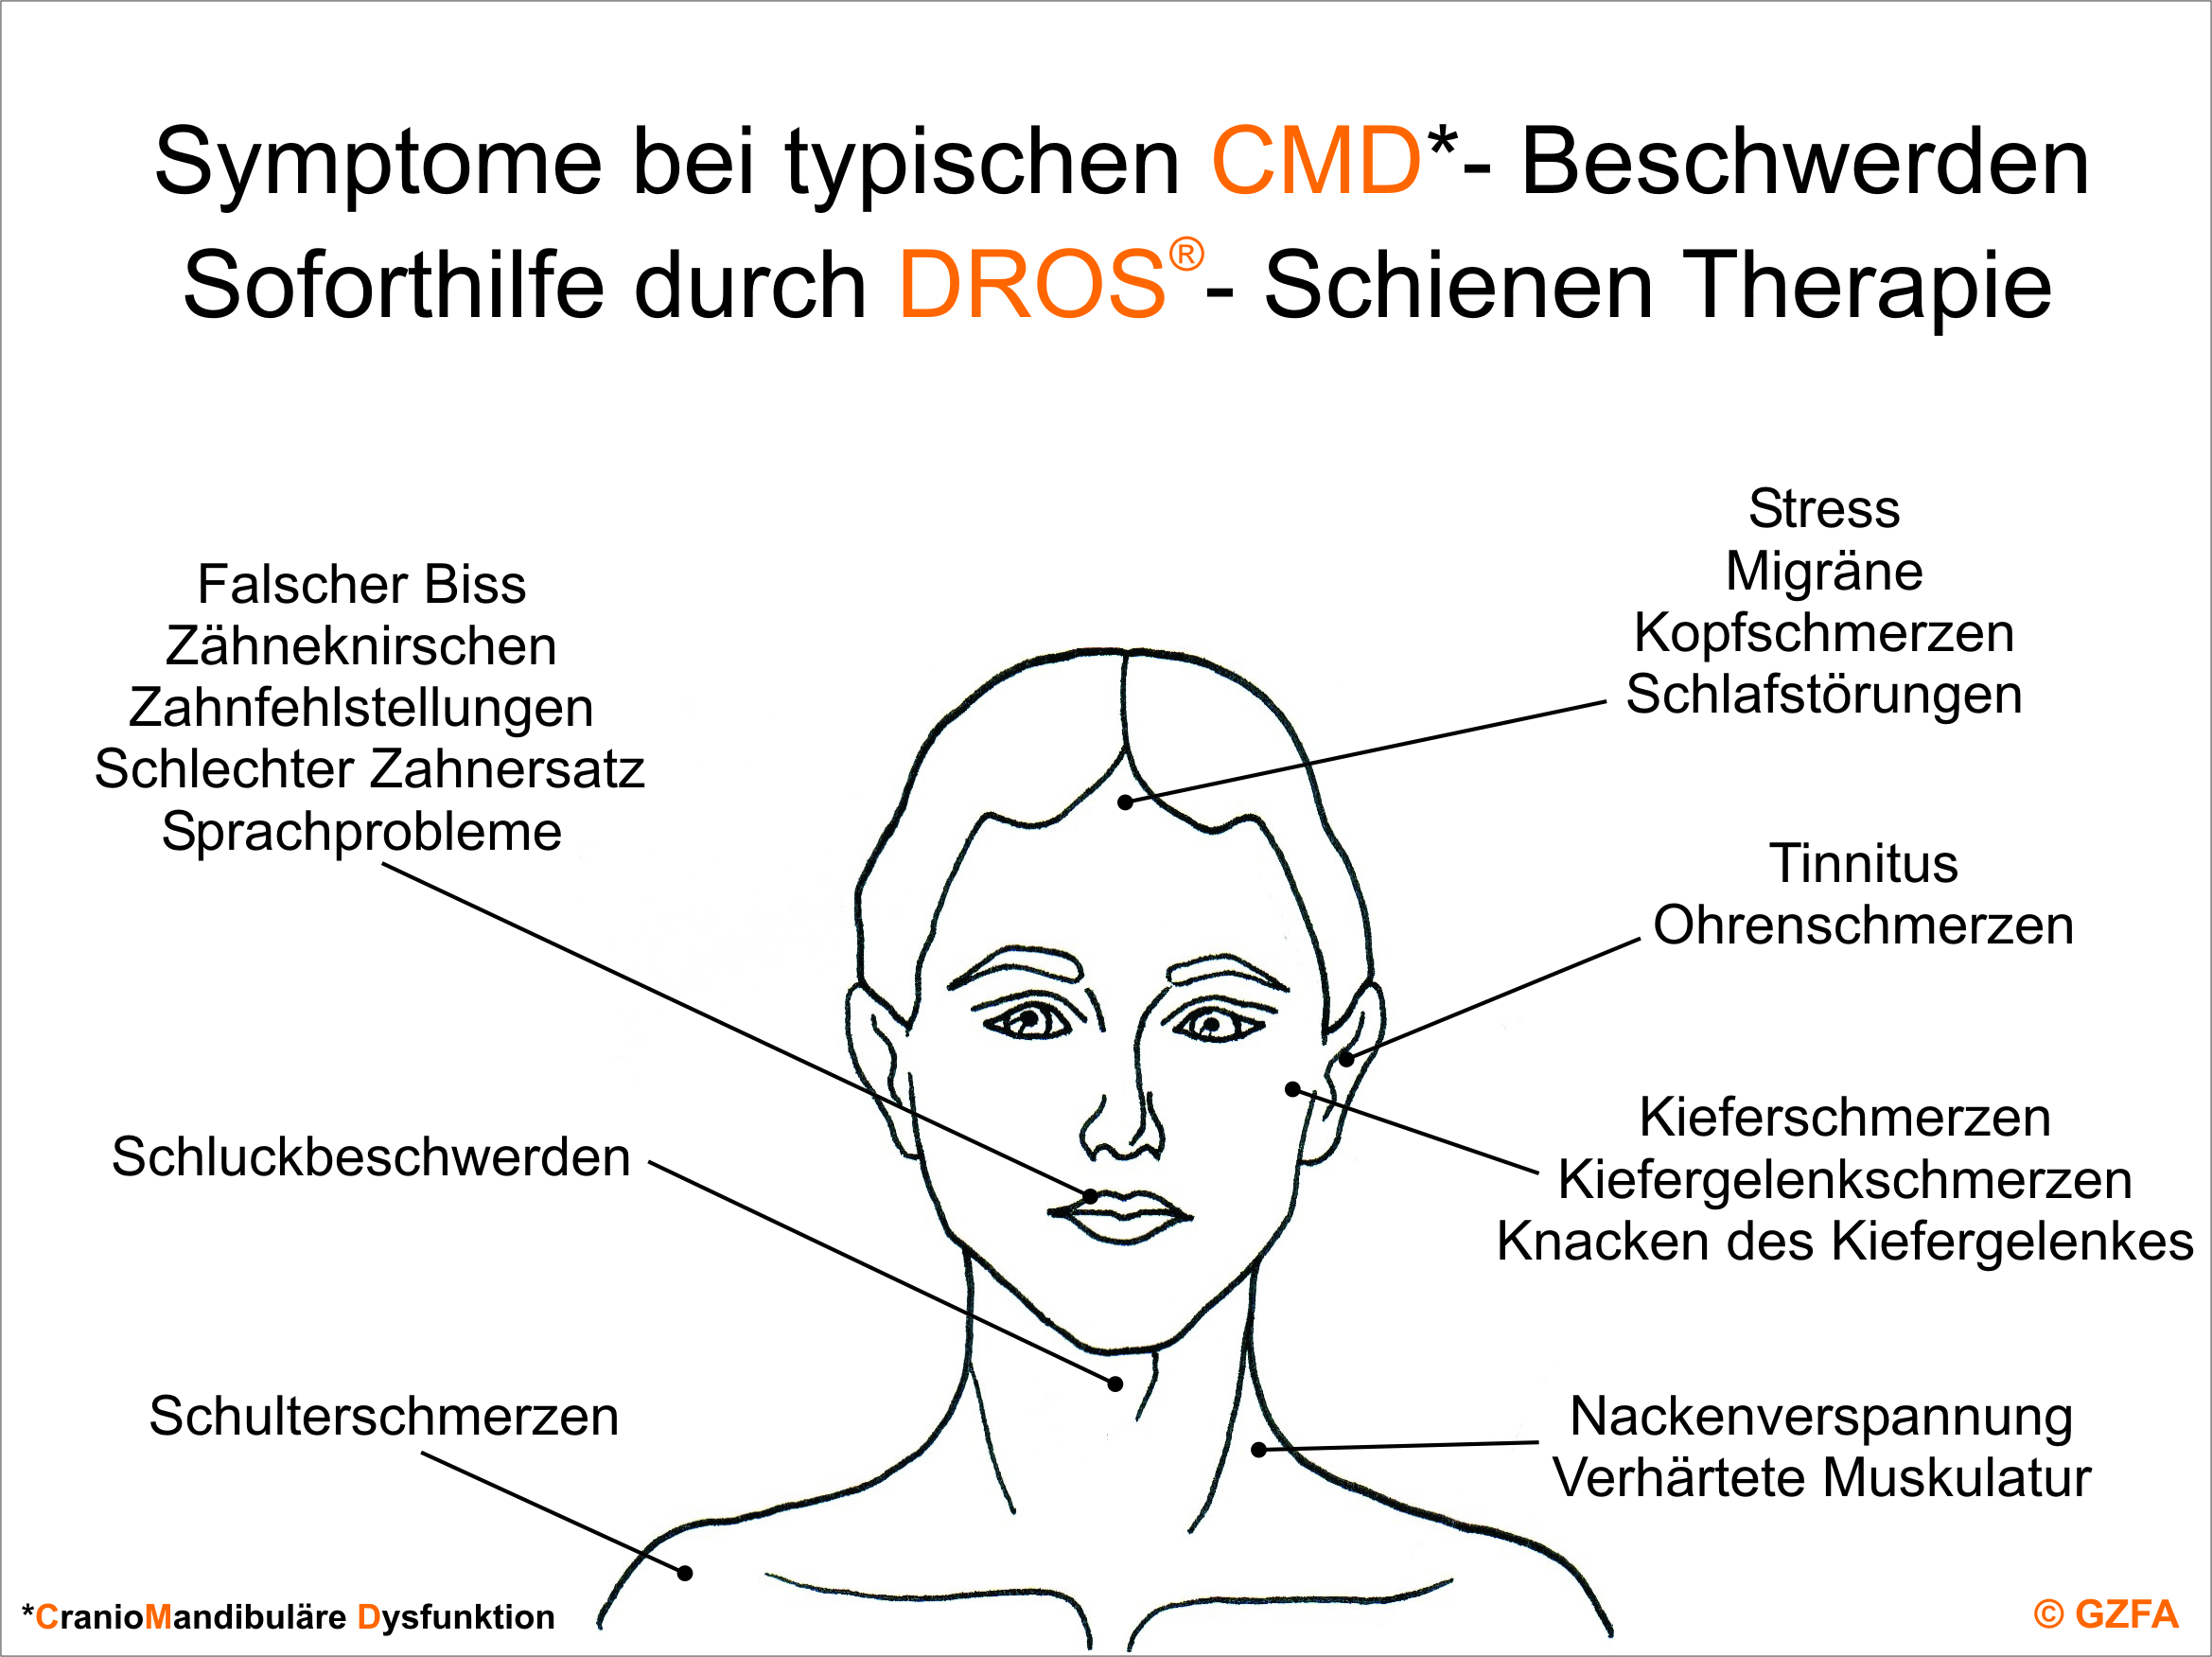 Berlin KU64, Grafik Symptome bei typischen CMD-Beschwerden, DROS-Schienen Therapie